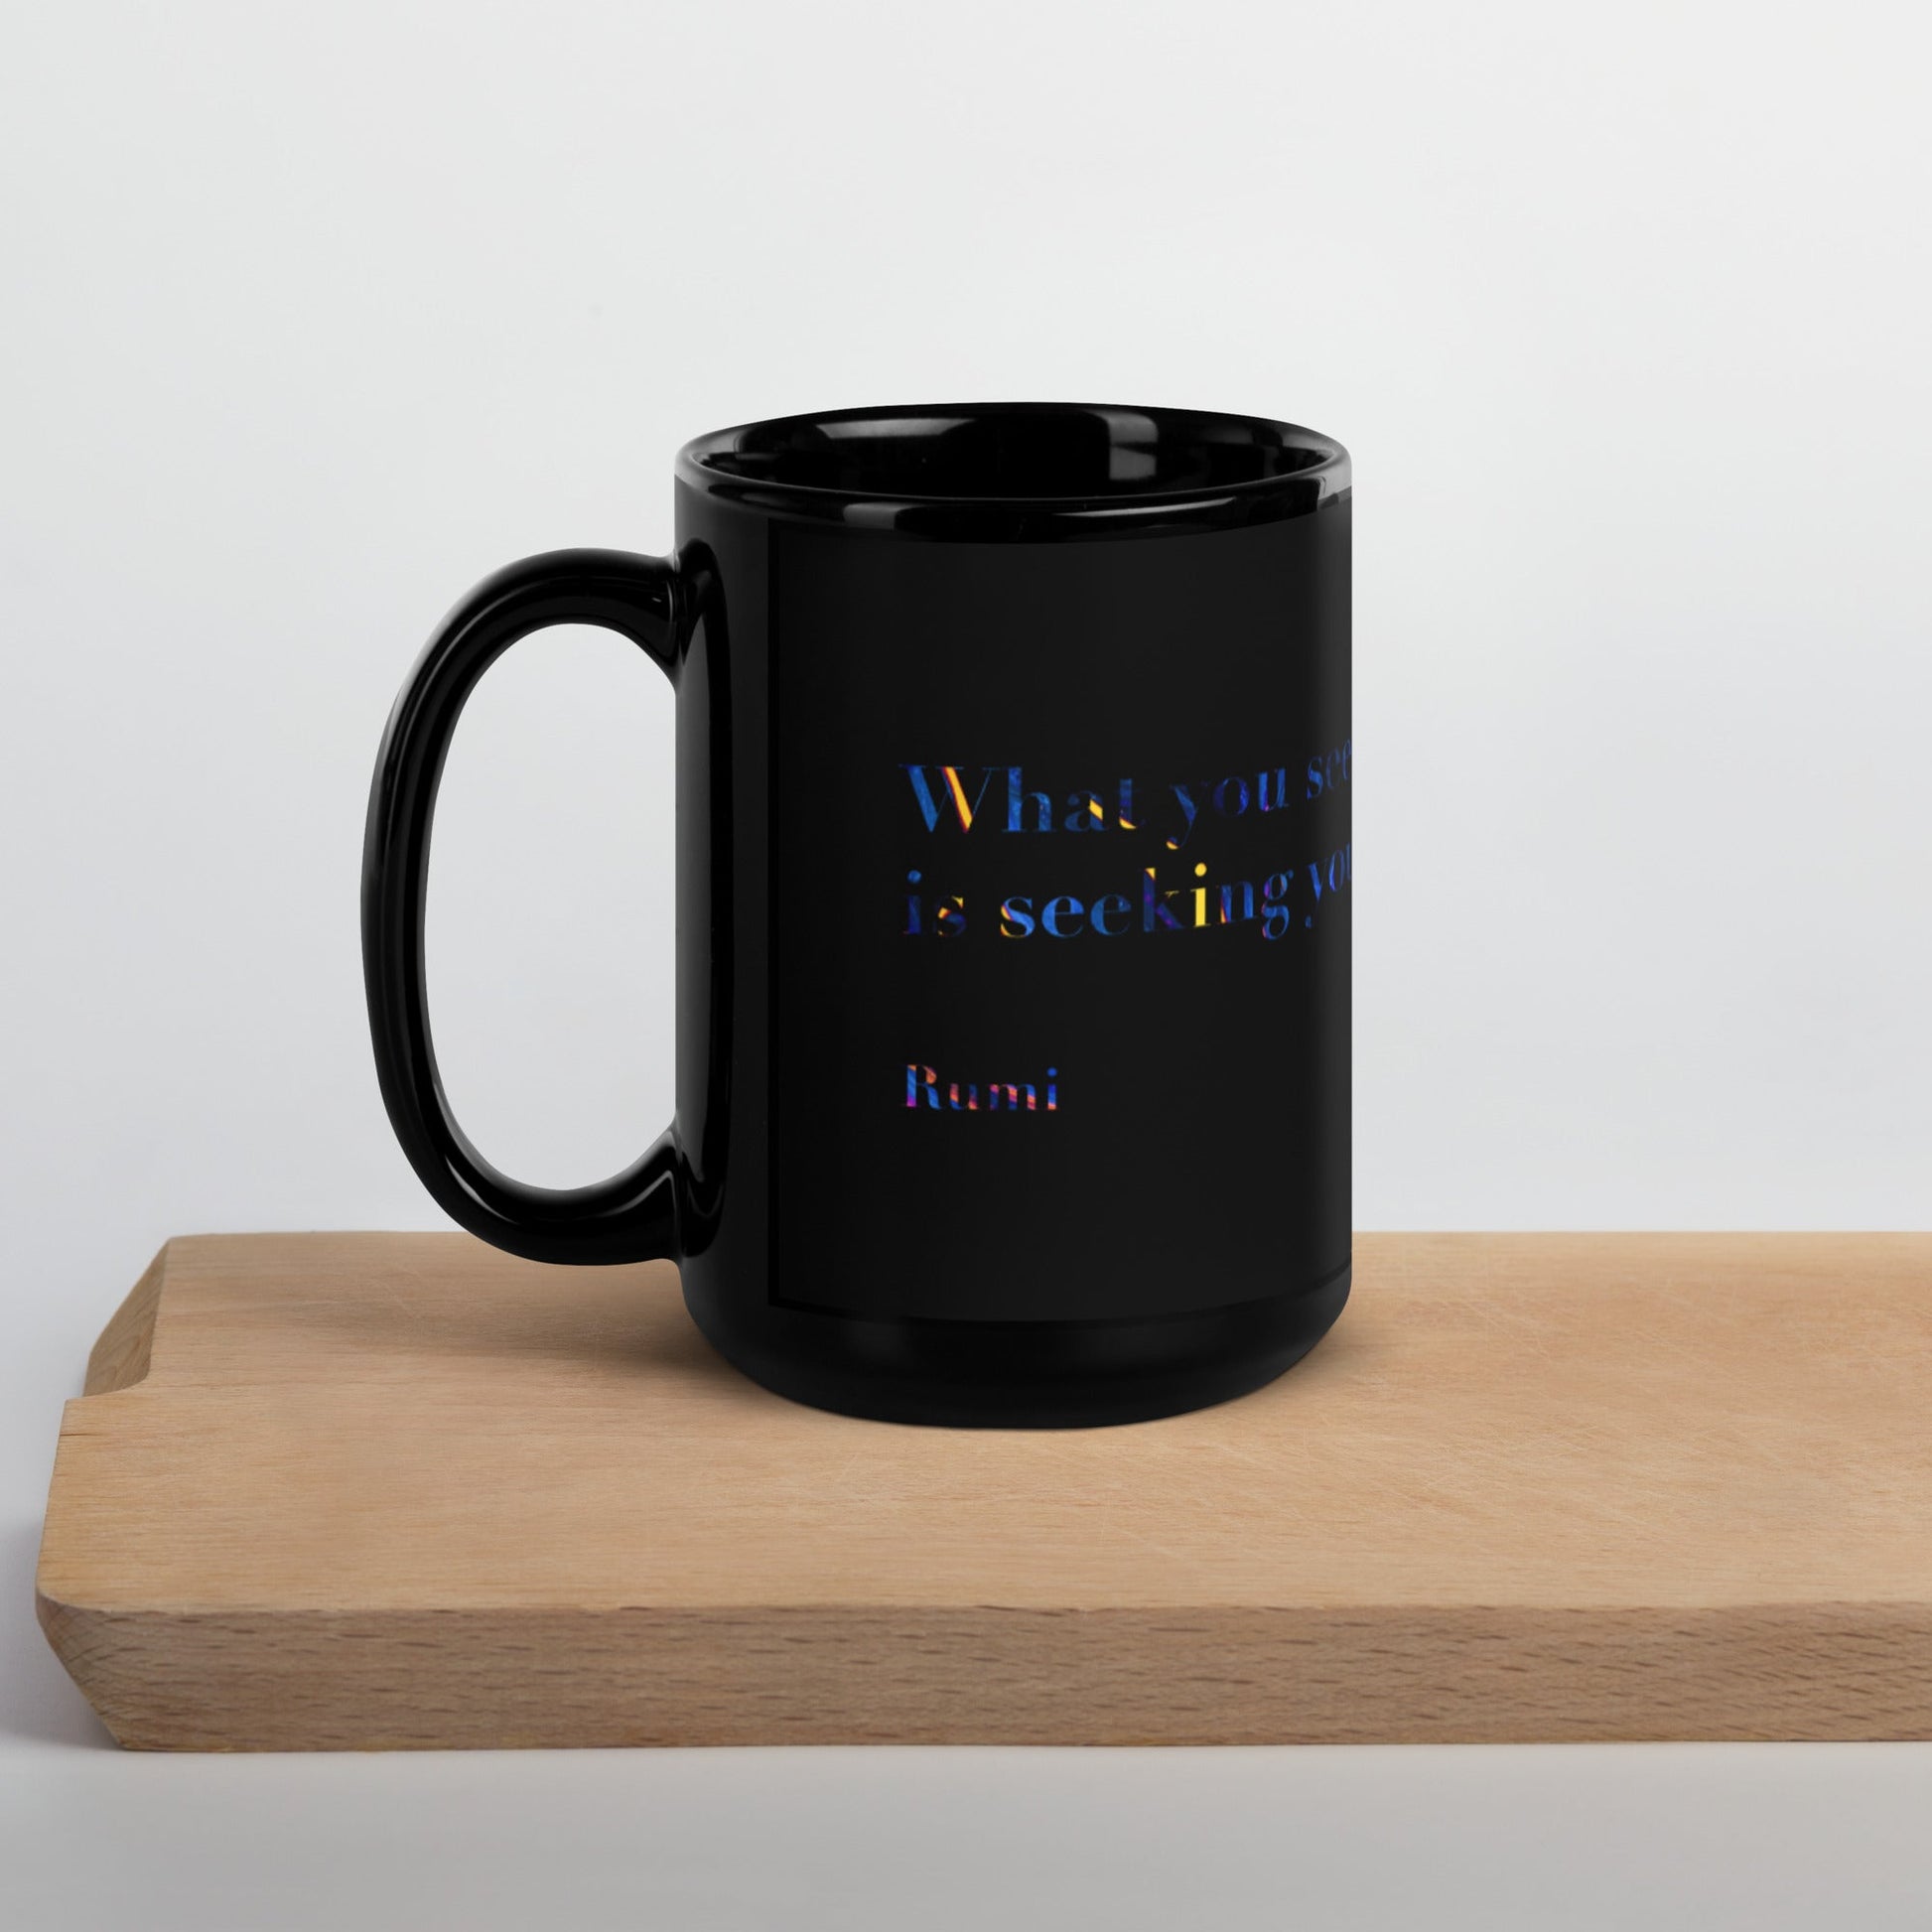 bonotee.com: Enamel mug, white mug, travel mug, photo mug, glass mug, cool mugs, enamel coffee mug, coffee mug, mugs, tea mug